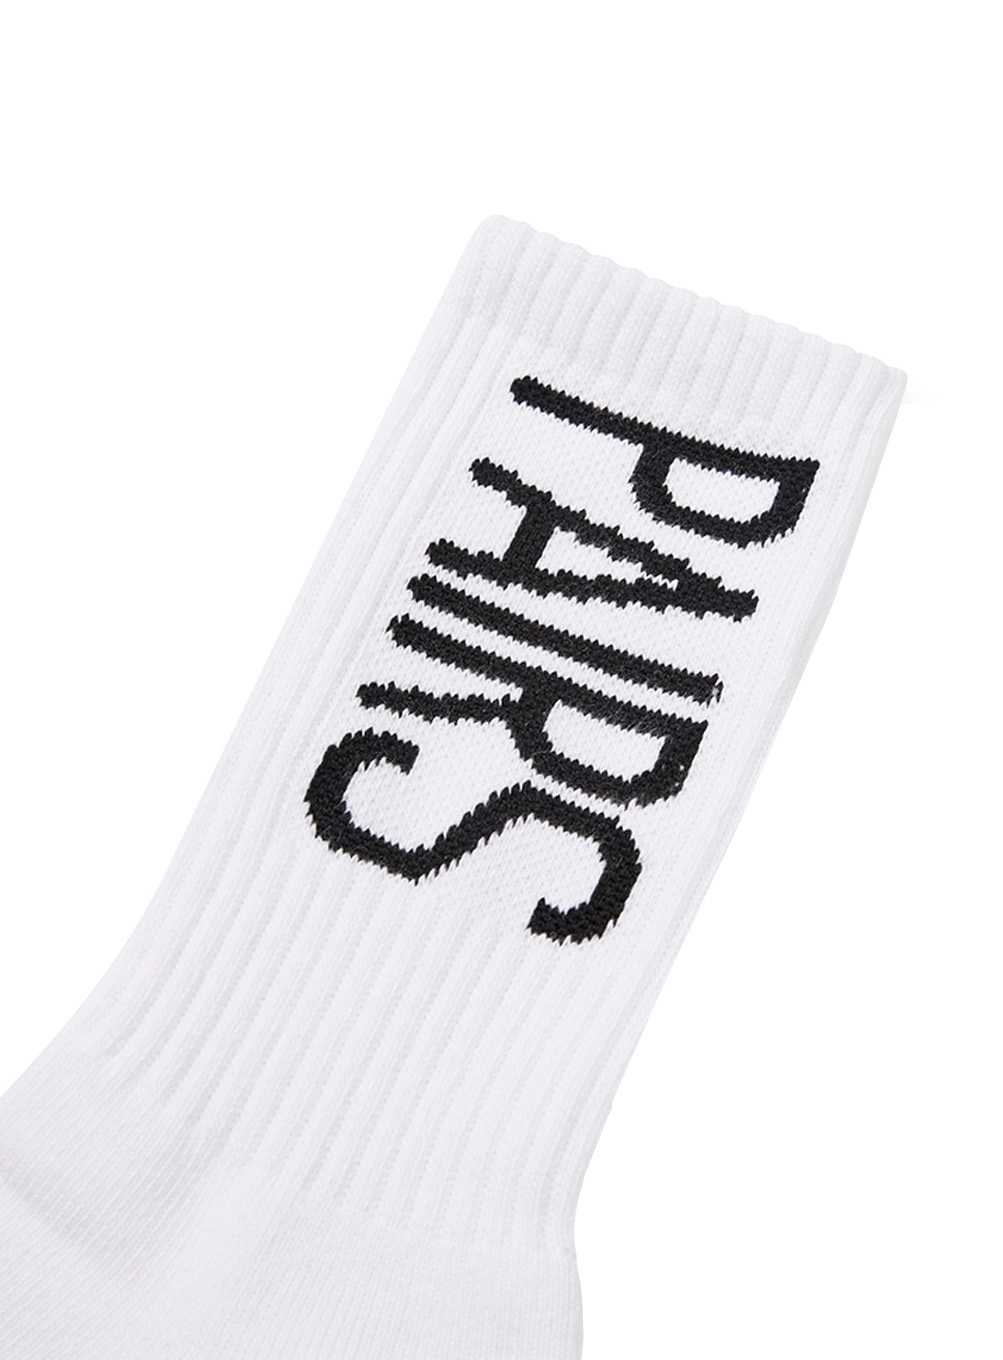 Pairs crew socks (white)